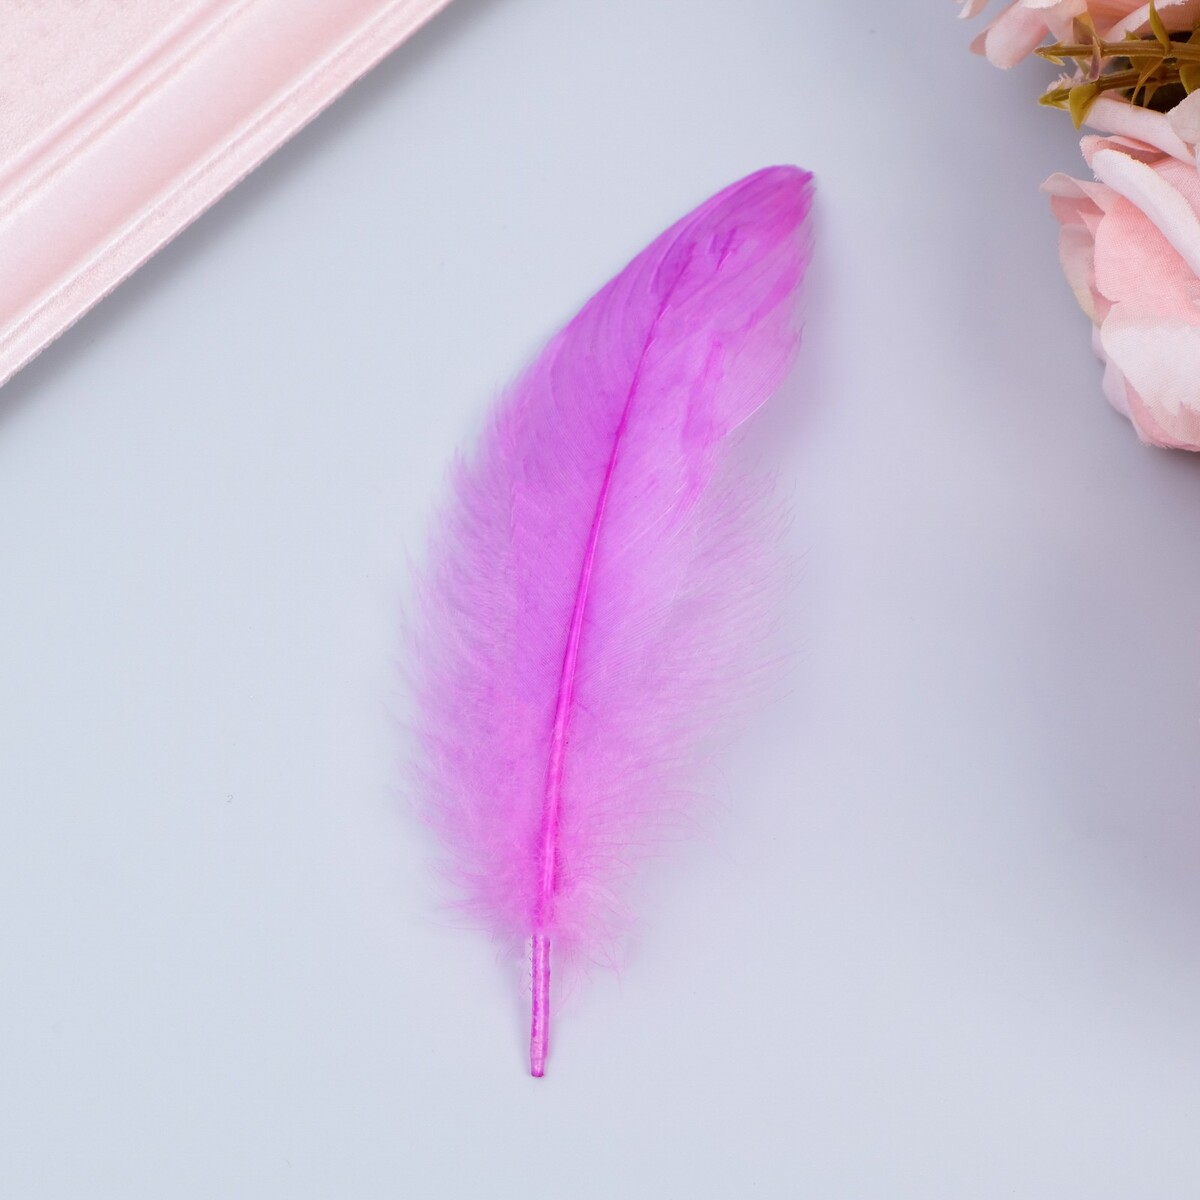 Наполнитель из перьев для шаров и подарков, светло-фиолетовый, 10-12 см 8 г наполнитель тишью фиолетовый 50 г